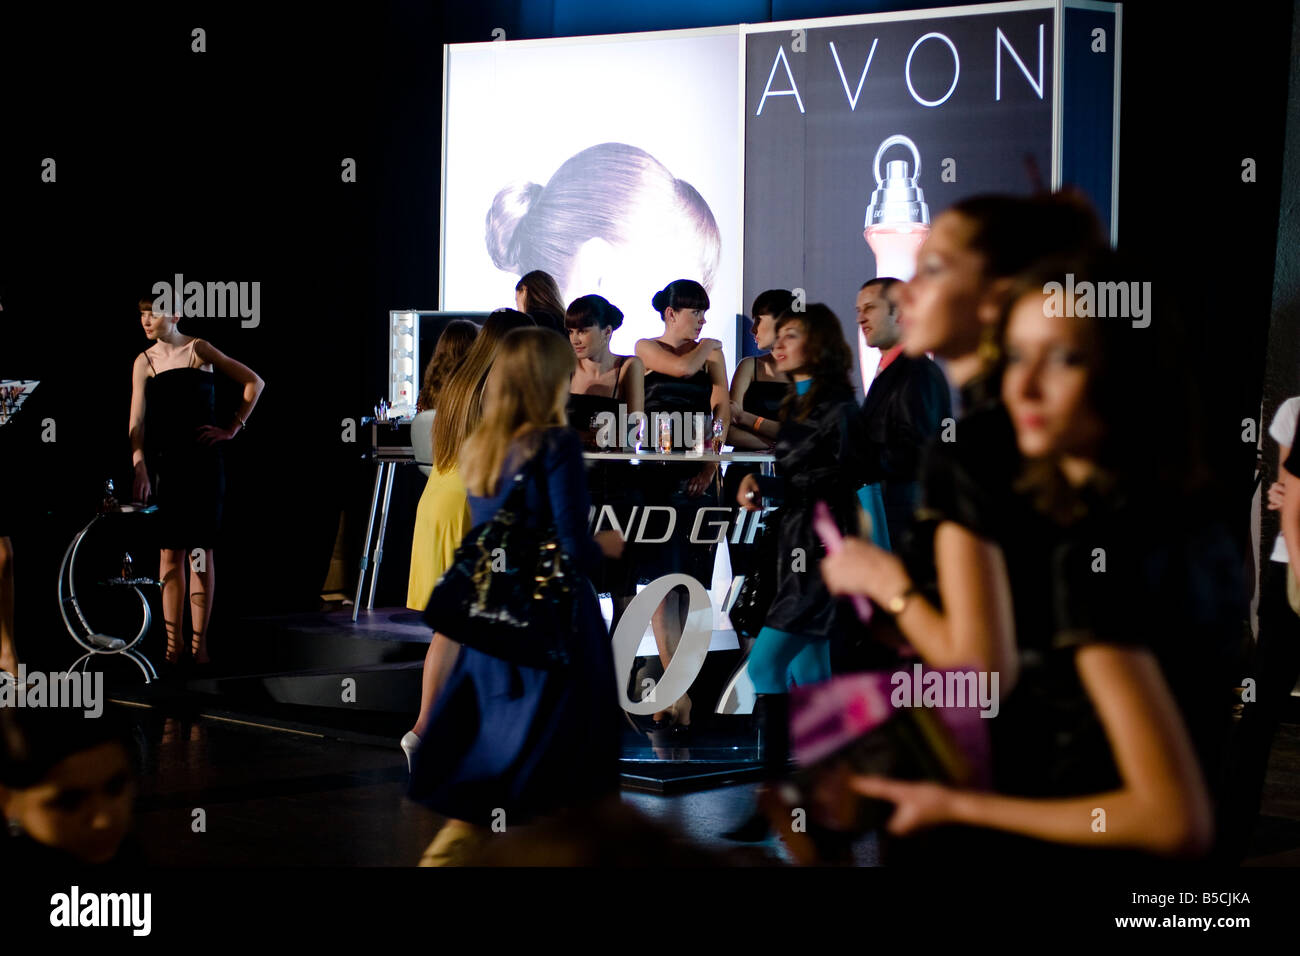 Hostessen in stehen der Kosmetikkonzern Avon im Rahmen der Ukrainian Fashion Week, in Kiew, Ukraine, Freitag, Oct.17, 2008 Stockfoto